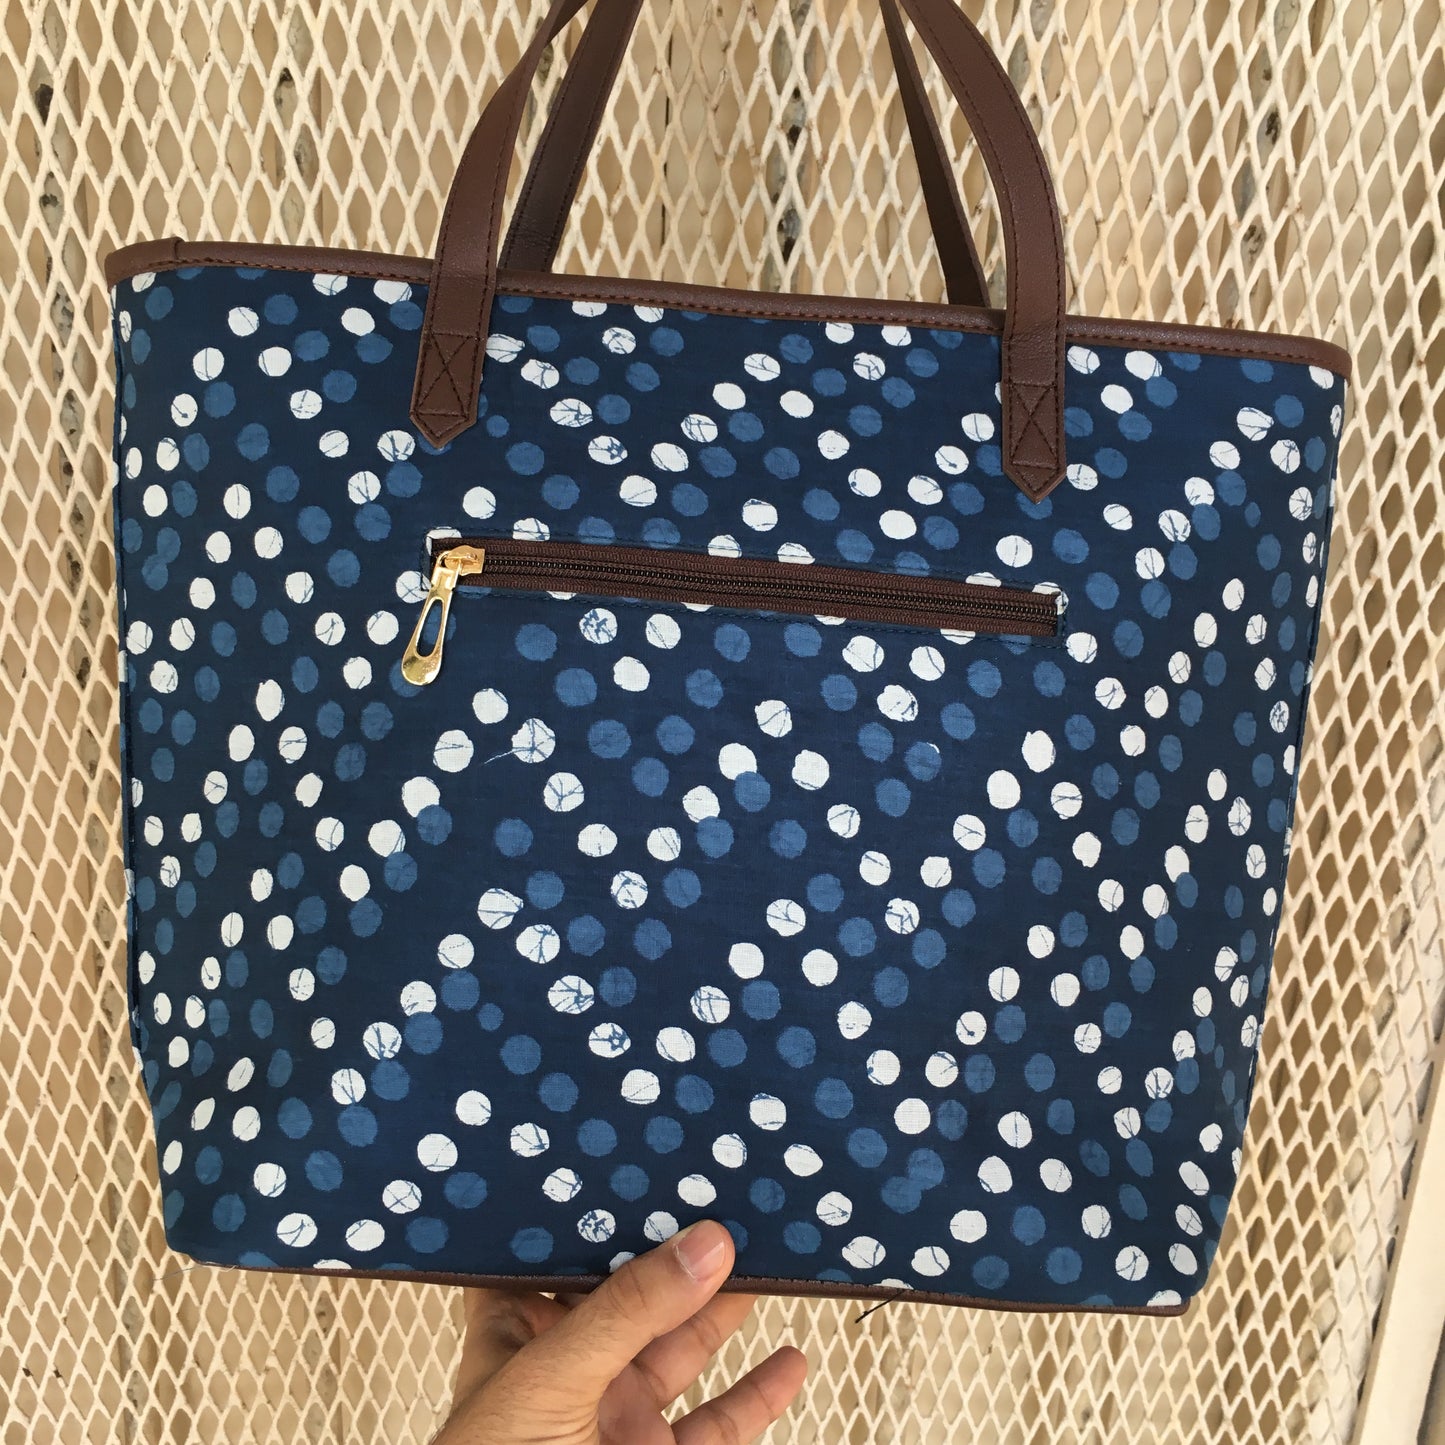 Blue Polka Dots - Printed Tote Bag